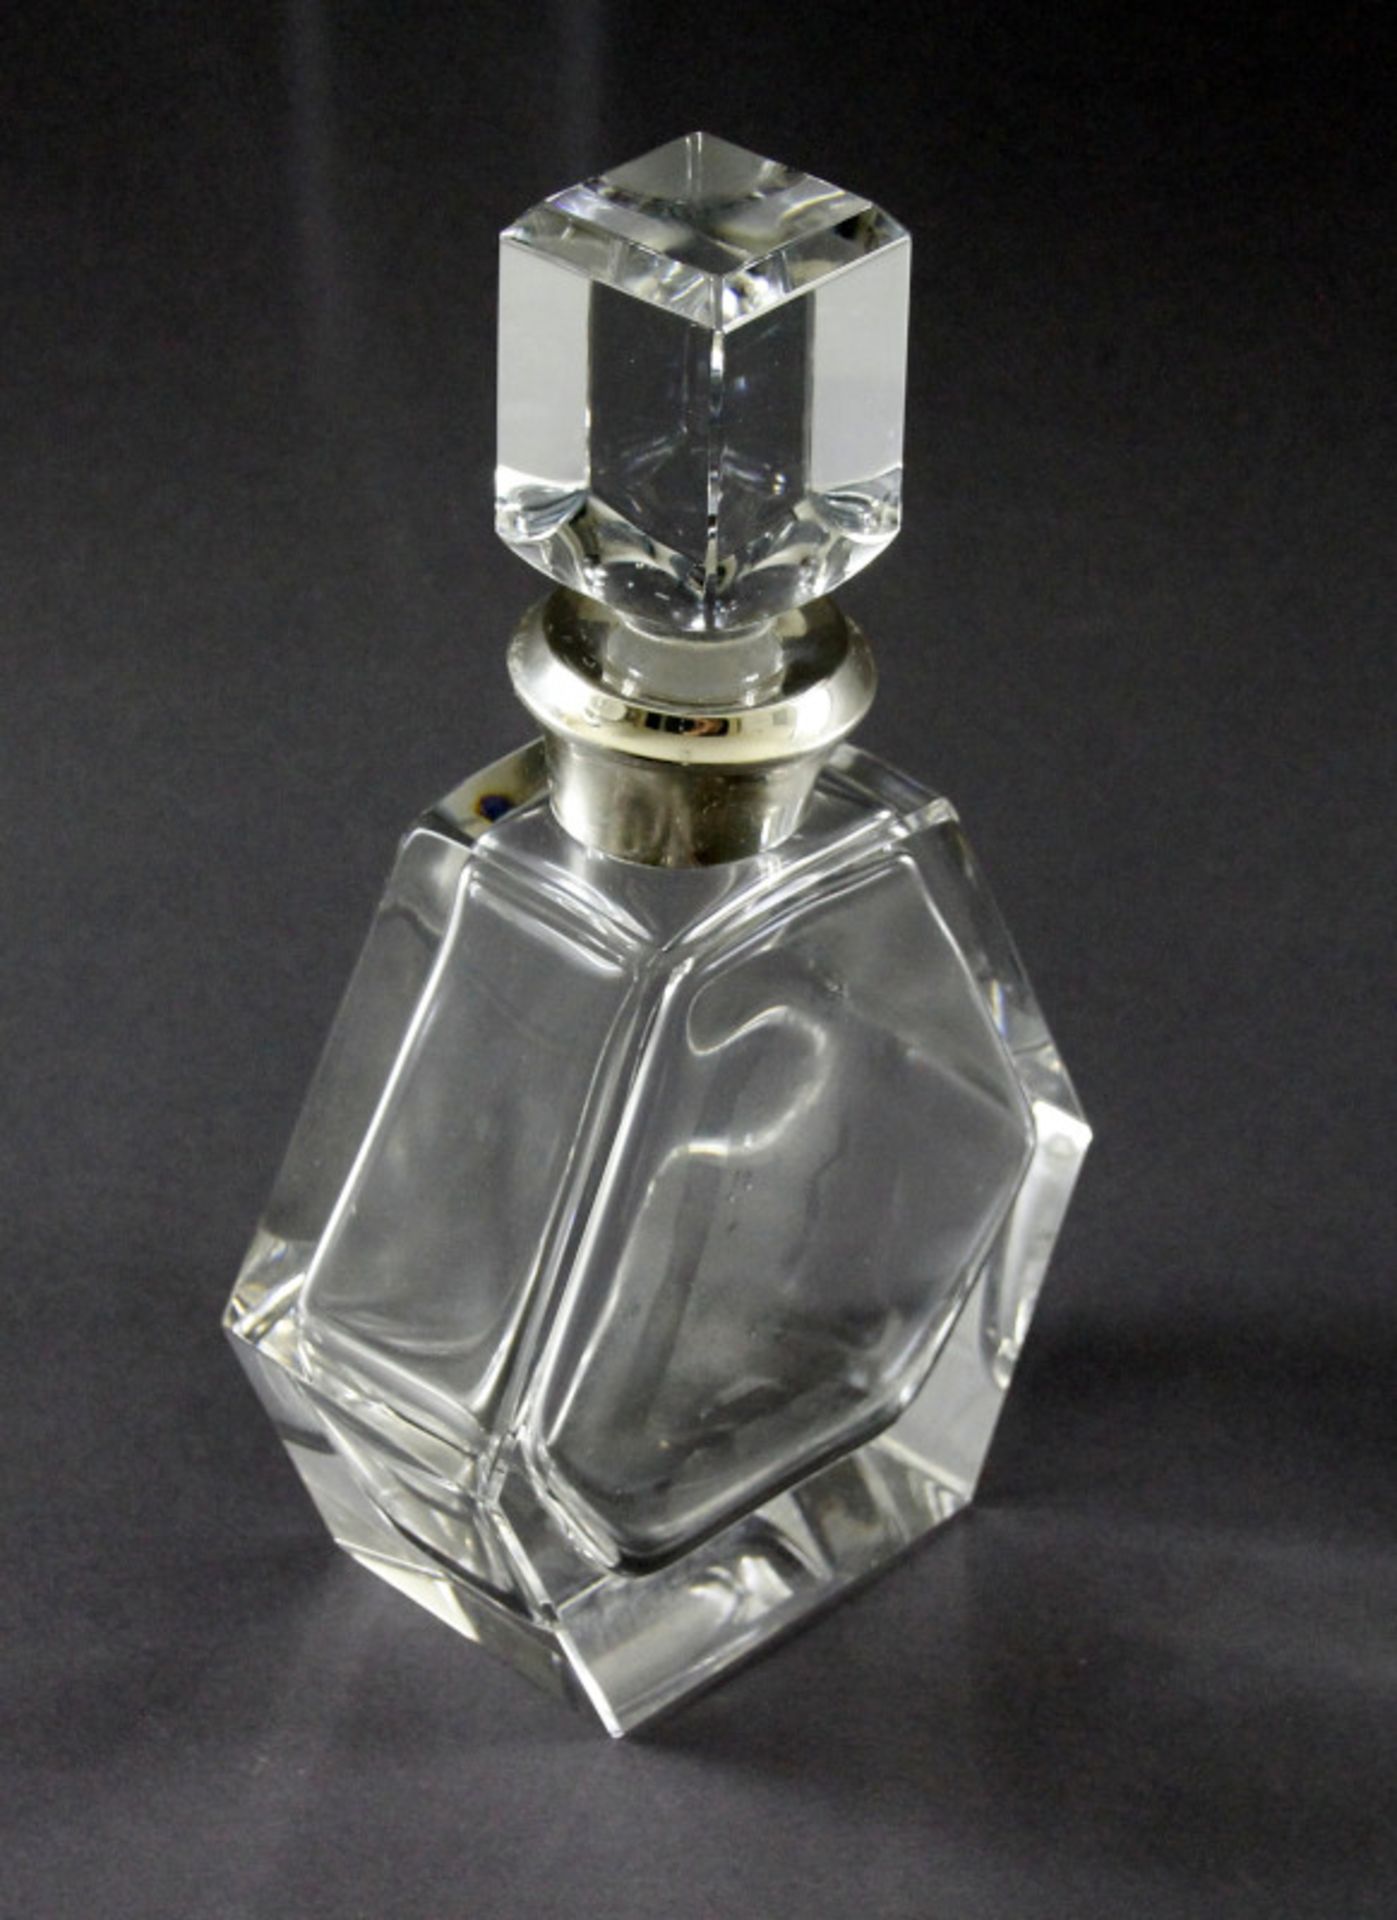 Kristallkaraffe mit 925er Silbermontierung am Karaffenhals, 20. Jhd.farbloses Glas, guter Zustand,